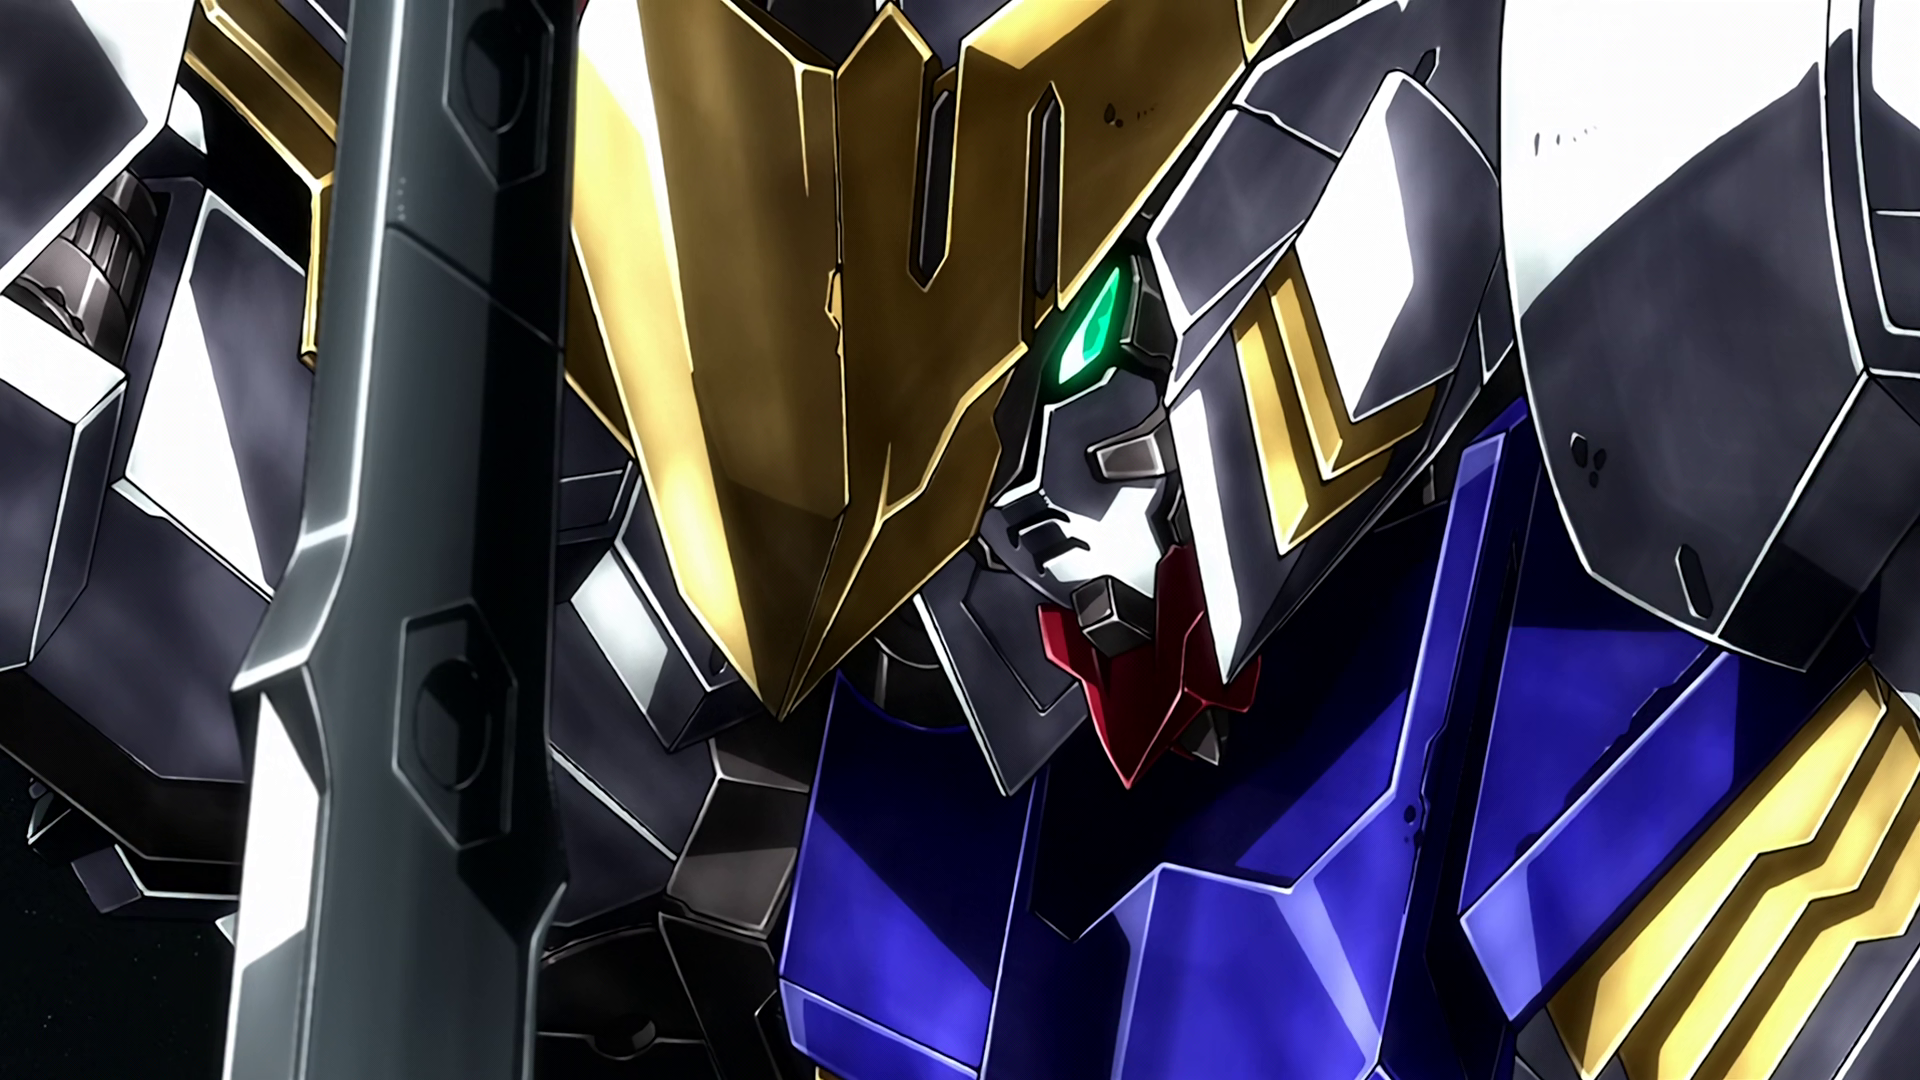 Mobile Suit Gundam Iron Blooded Orphans Gundam Barbatos Glowing Eyes Space Anime Screenshot 1920x1080